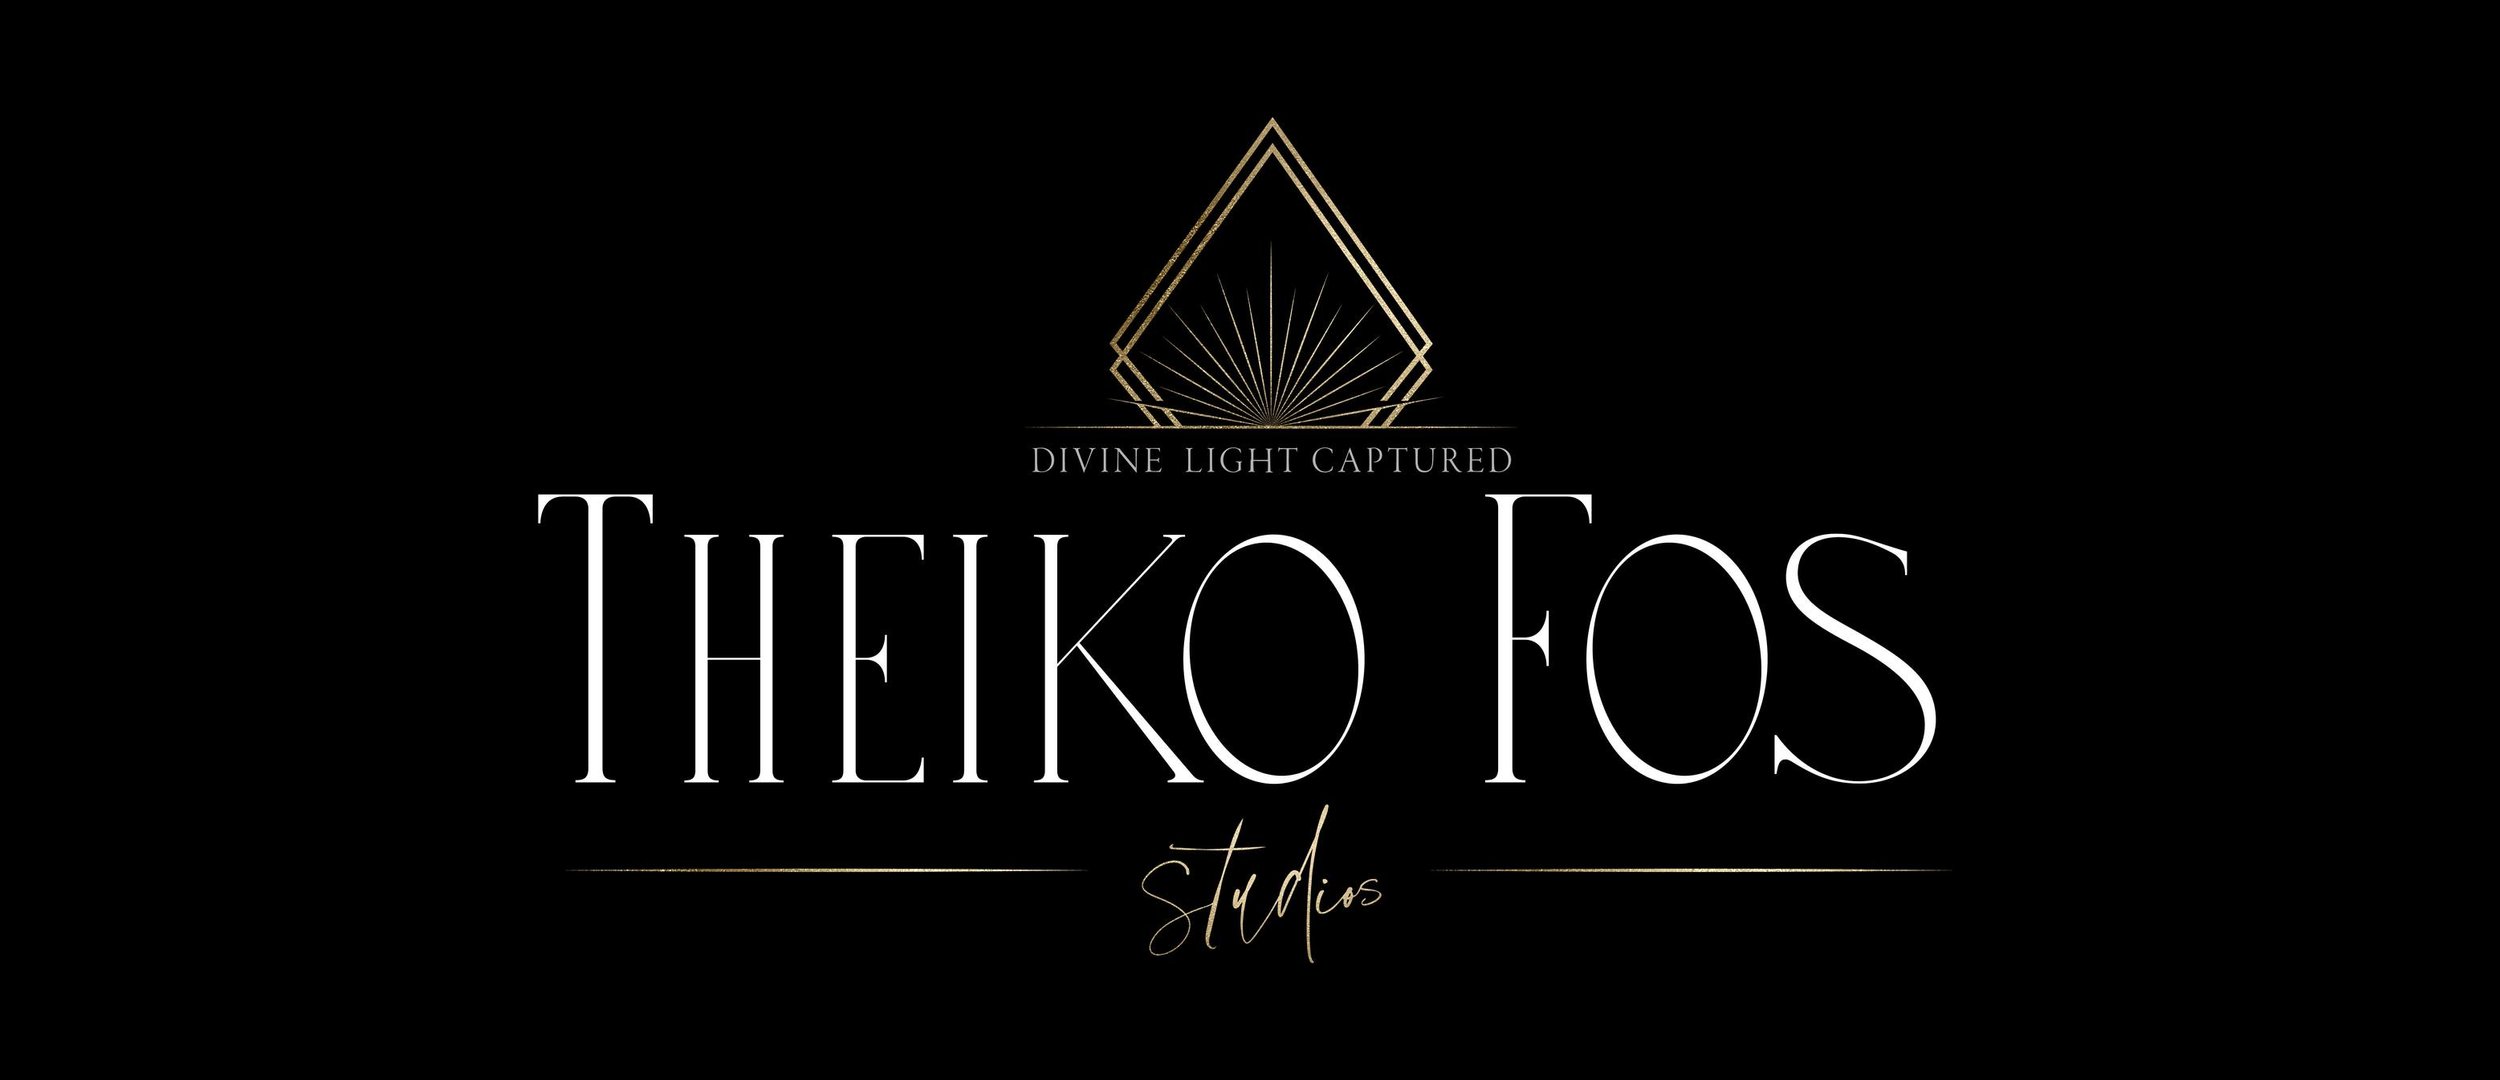 Theiko Fos Studios